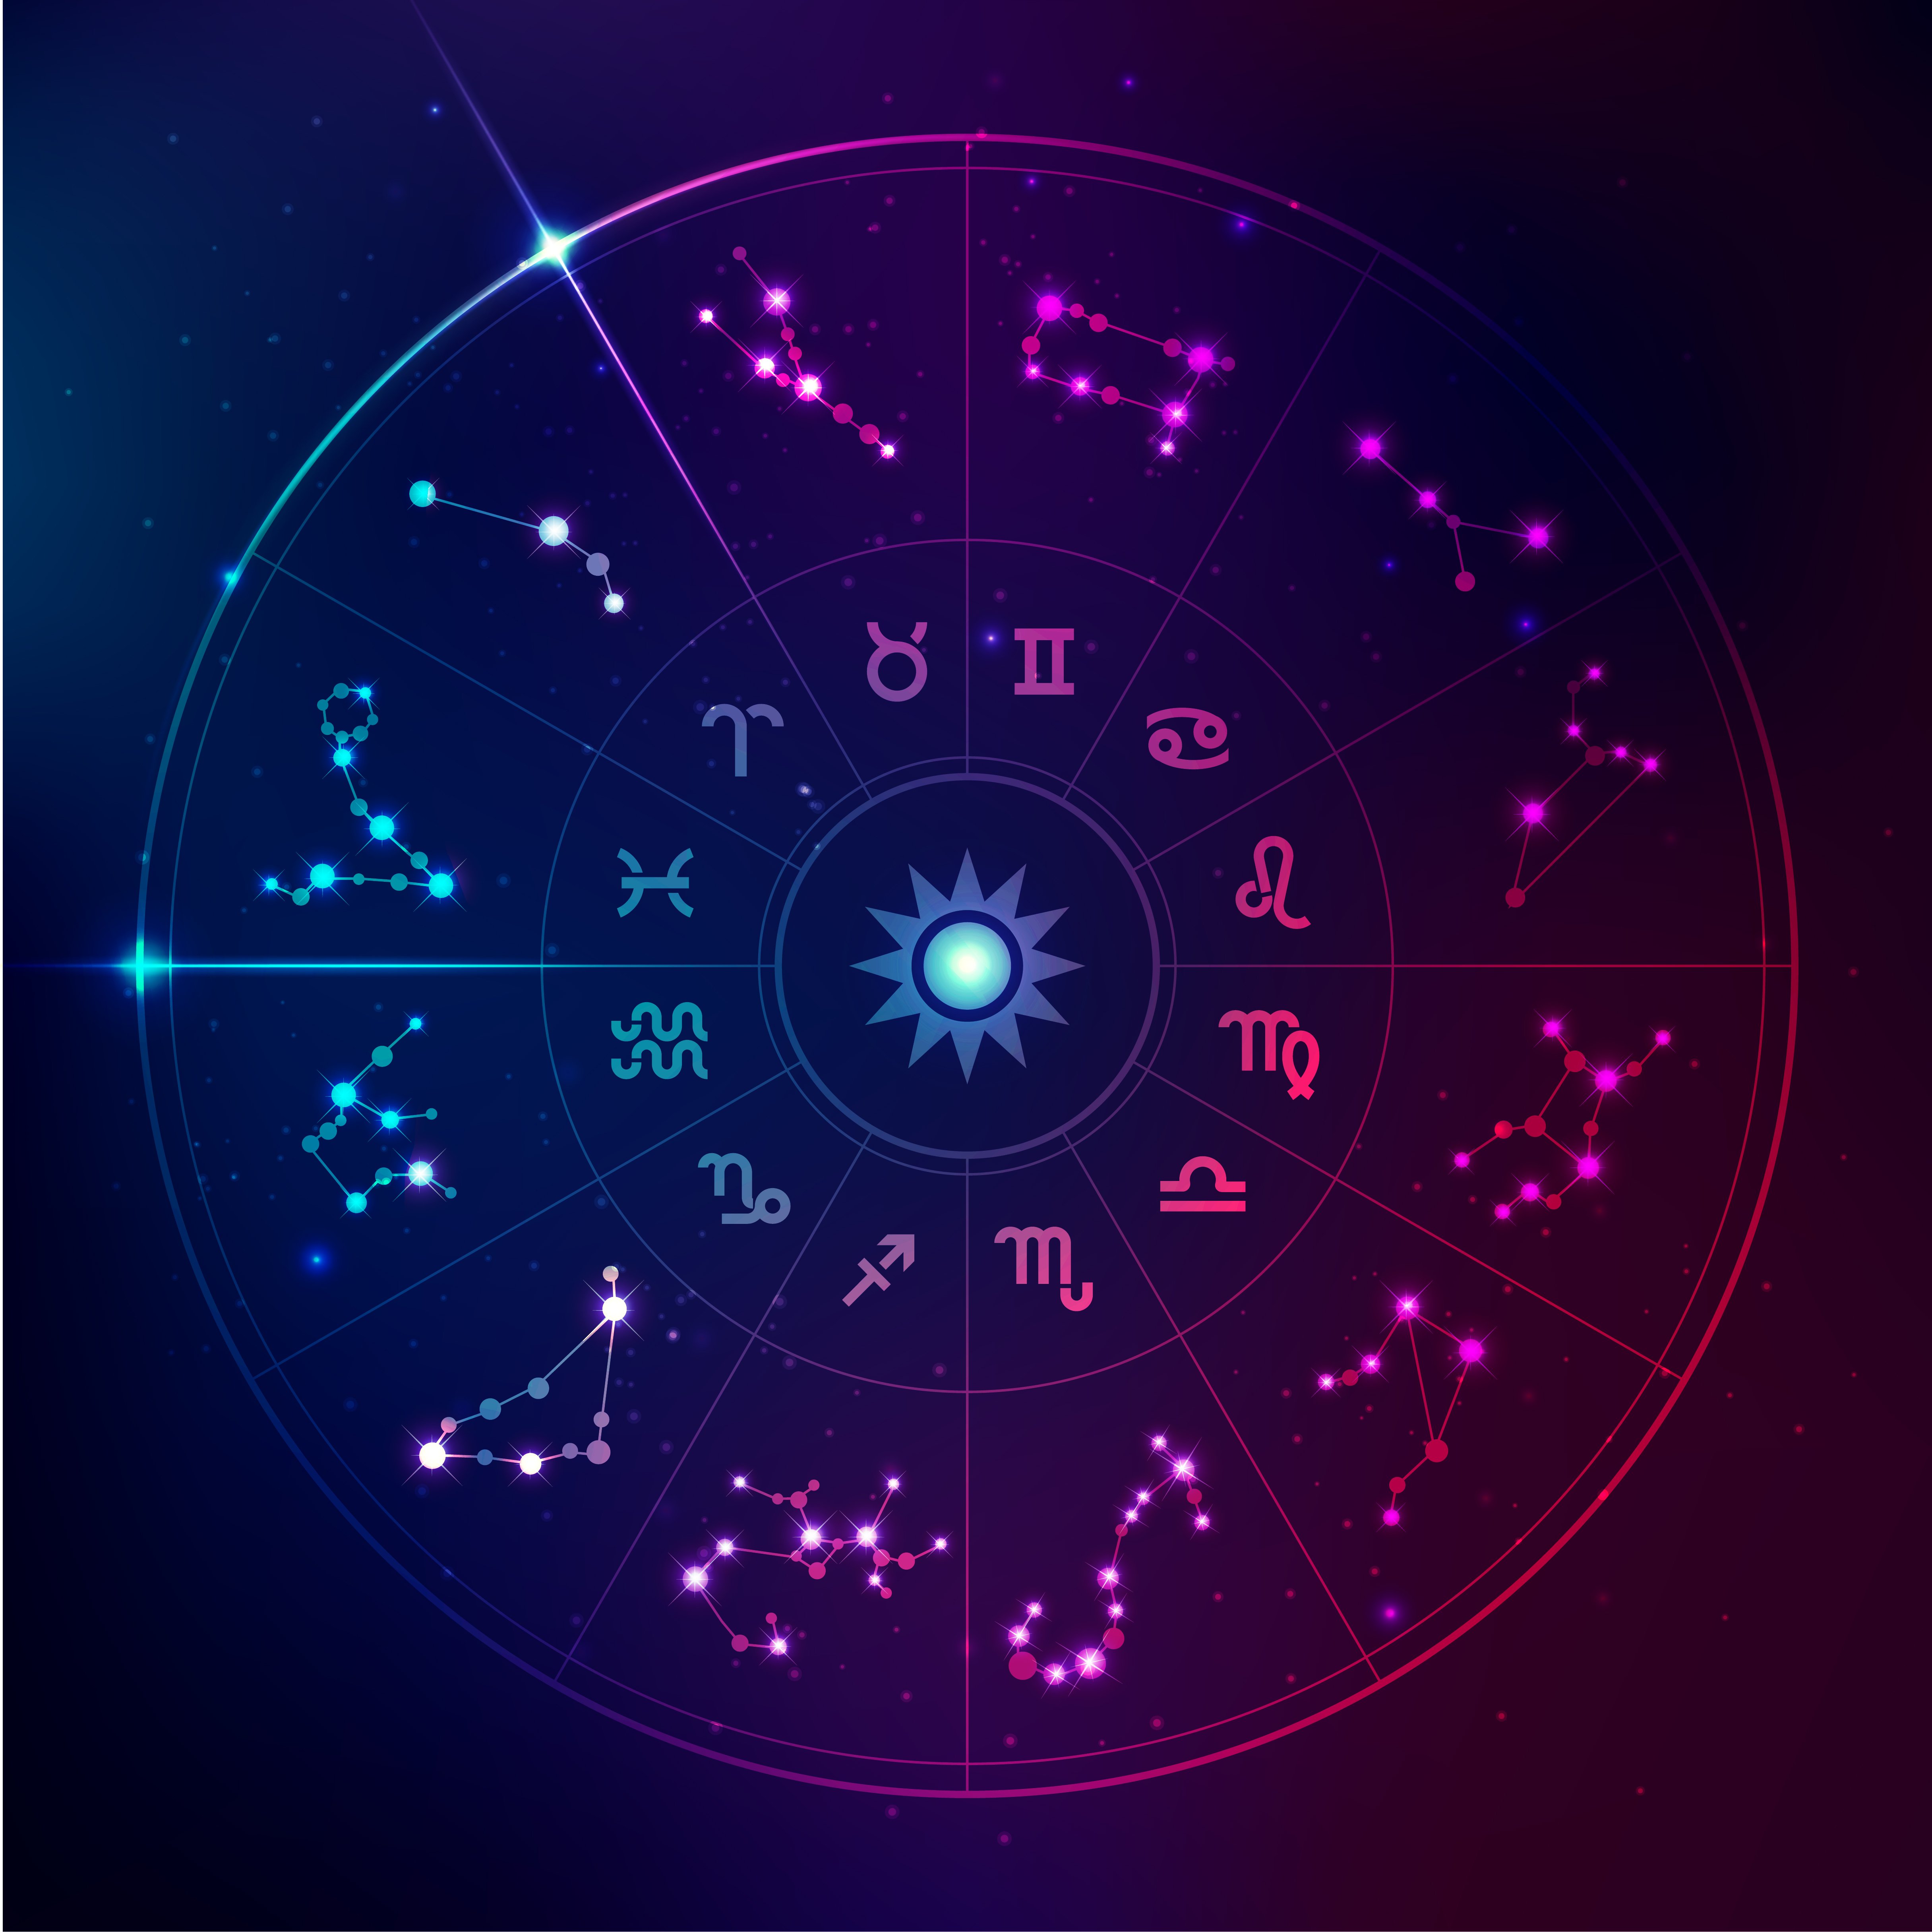 Signos del horóscopo en estilo futurista, estrellas de la galaxia en el zodiaco. | Fuente: Shutterstock